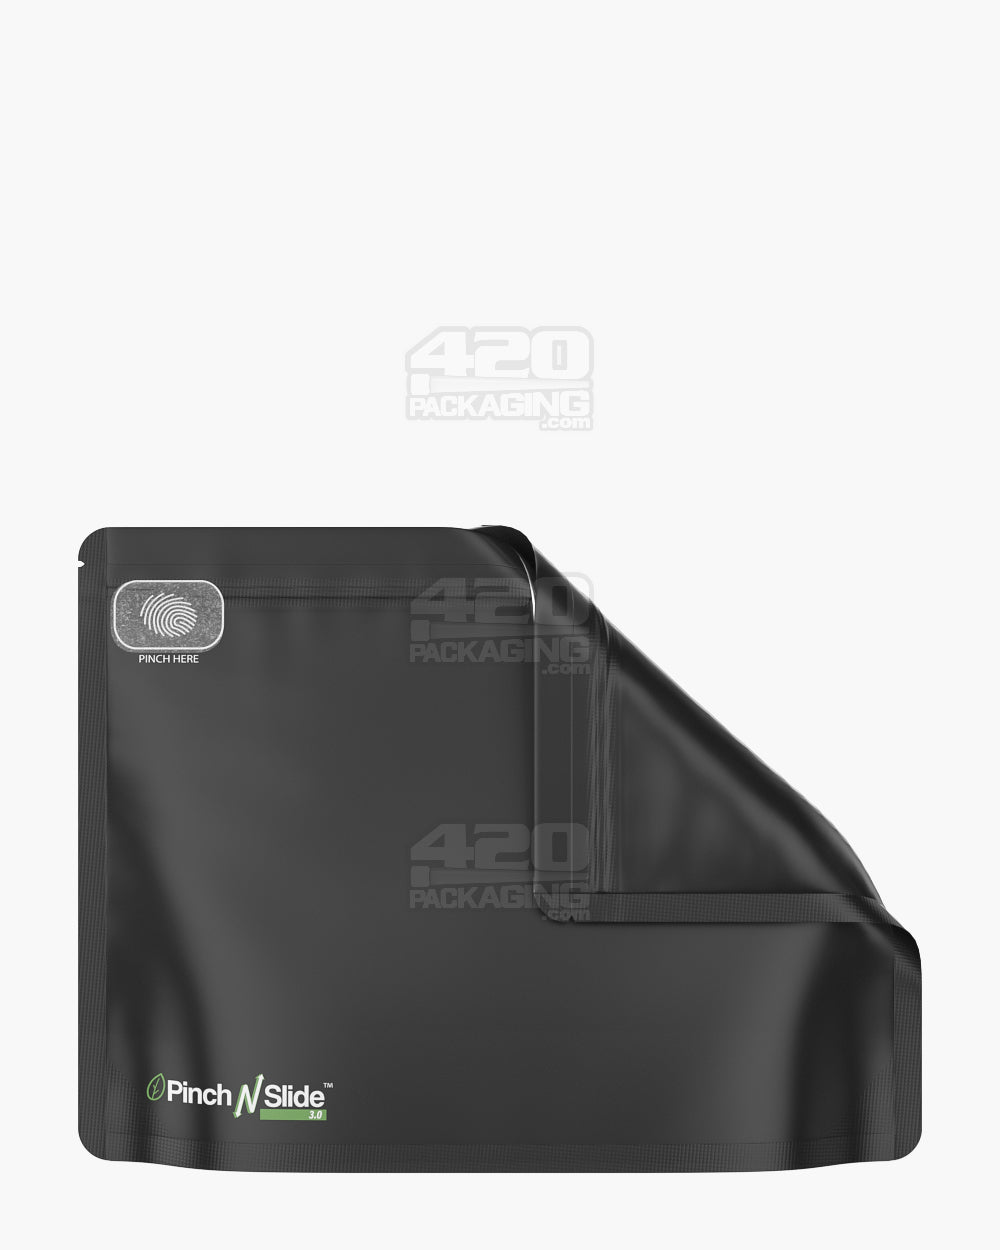 Matte-Black 12" x 9" PCR Mylar Pinch N Slide 3.0 Child Resistant & Tamper Evident Exit Bags (56 grams) 250/Box